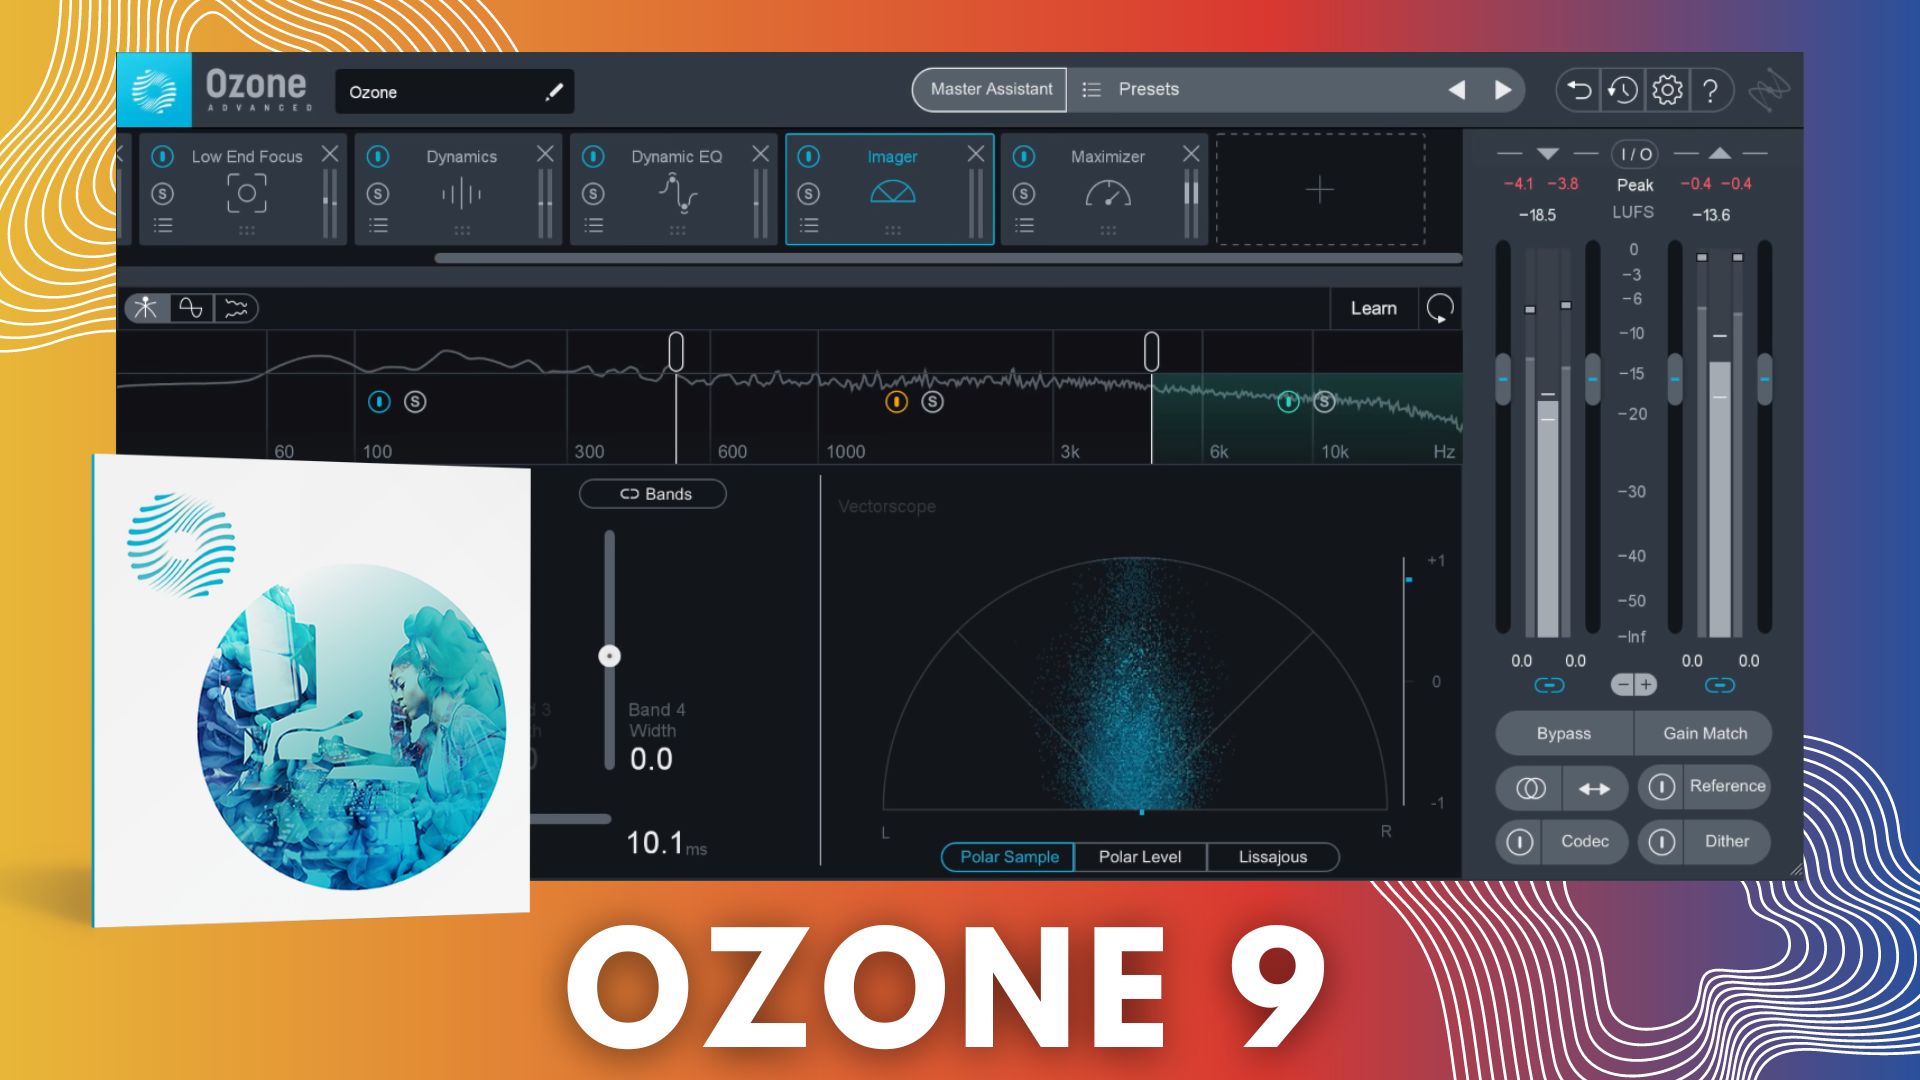 iZotope Ozone 9 Elements